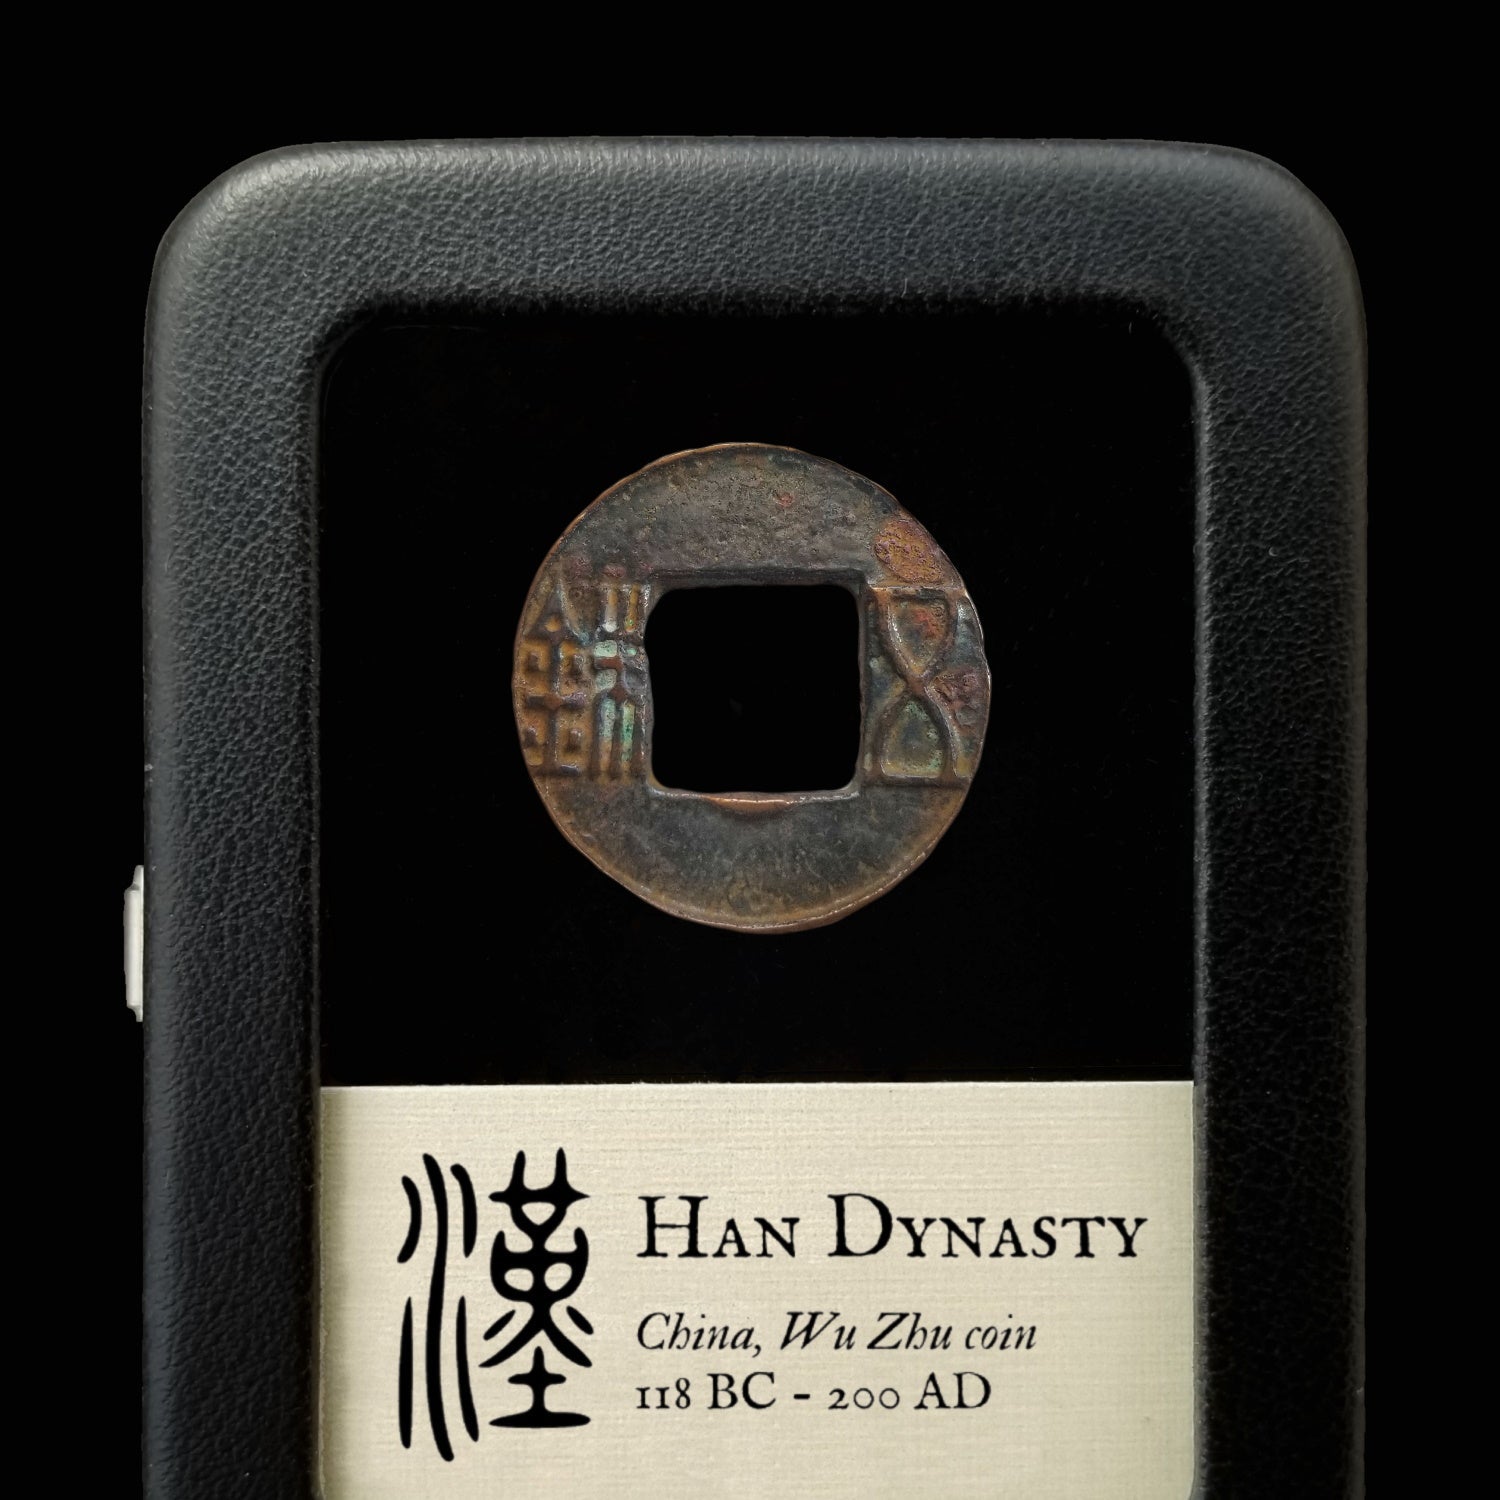 China, Han Dynasty - 118 BC - Ancient China